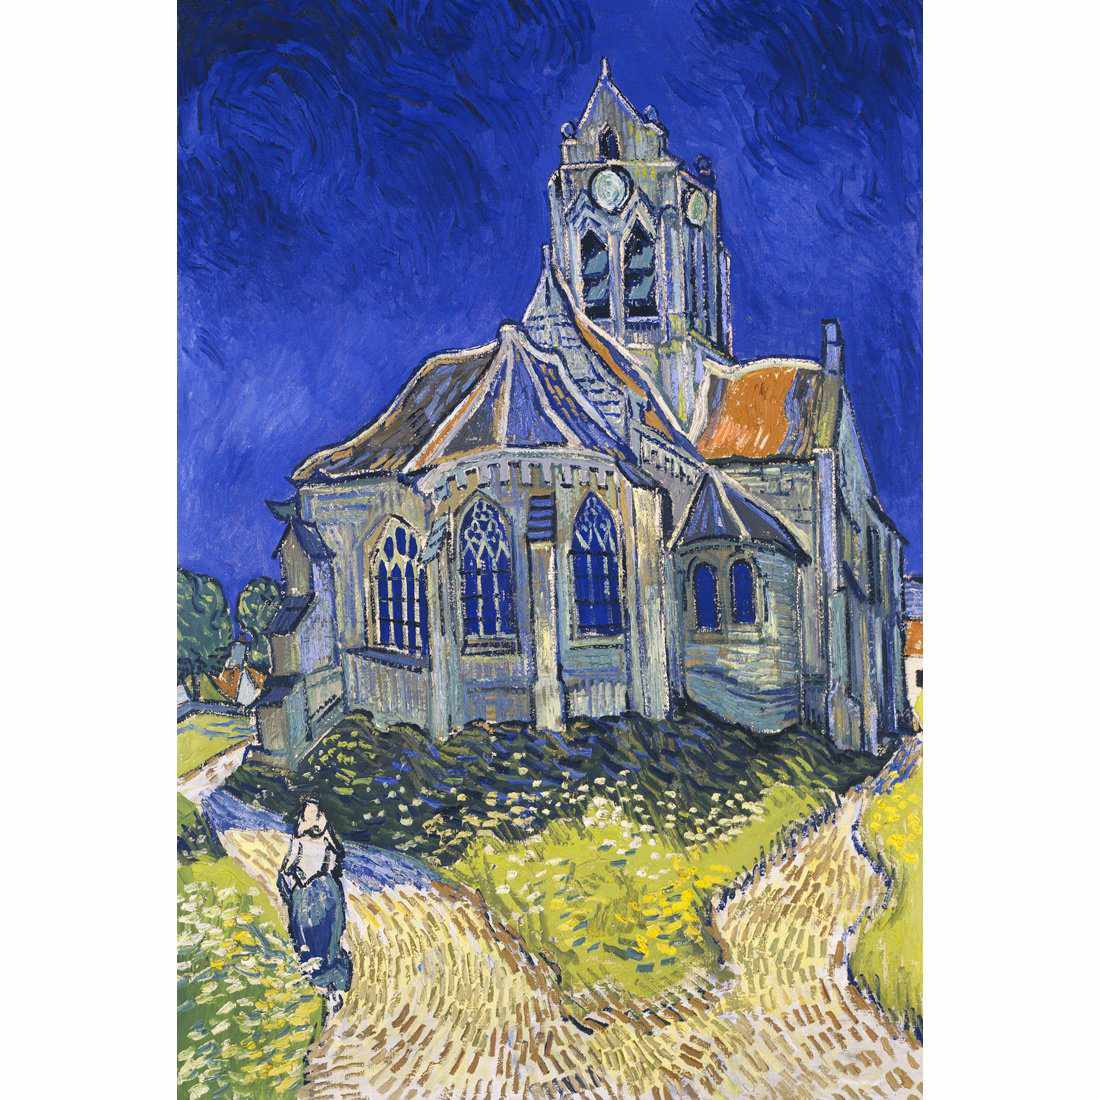 The Church At Auvers - Van Gogh Canvas Art-Canvas-Wall Art Designs-45x30cm-Canvas - No Frame-Wall Art Designs